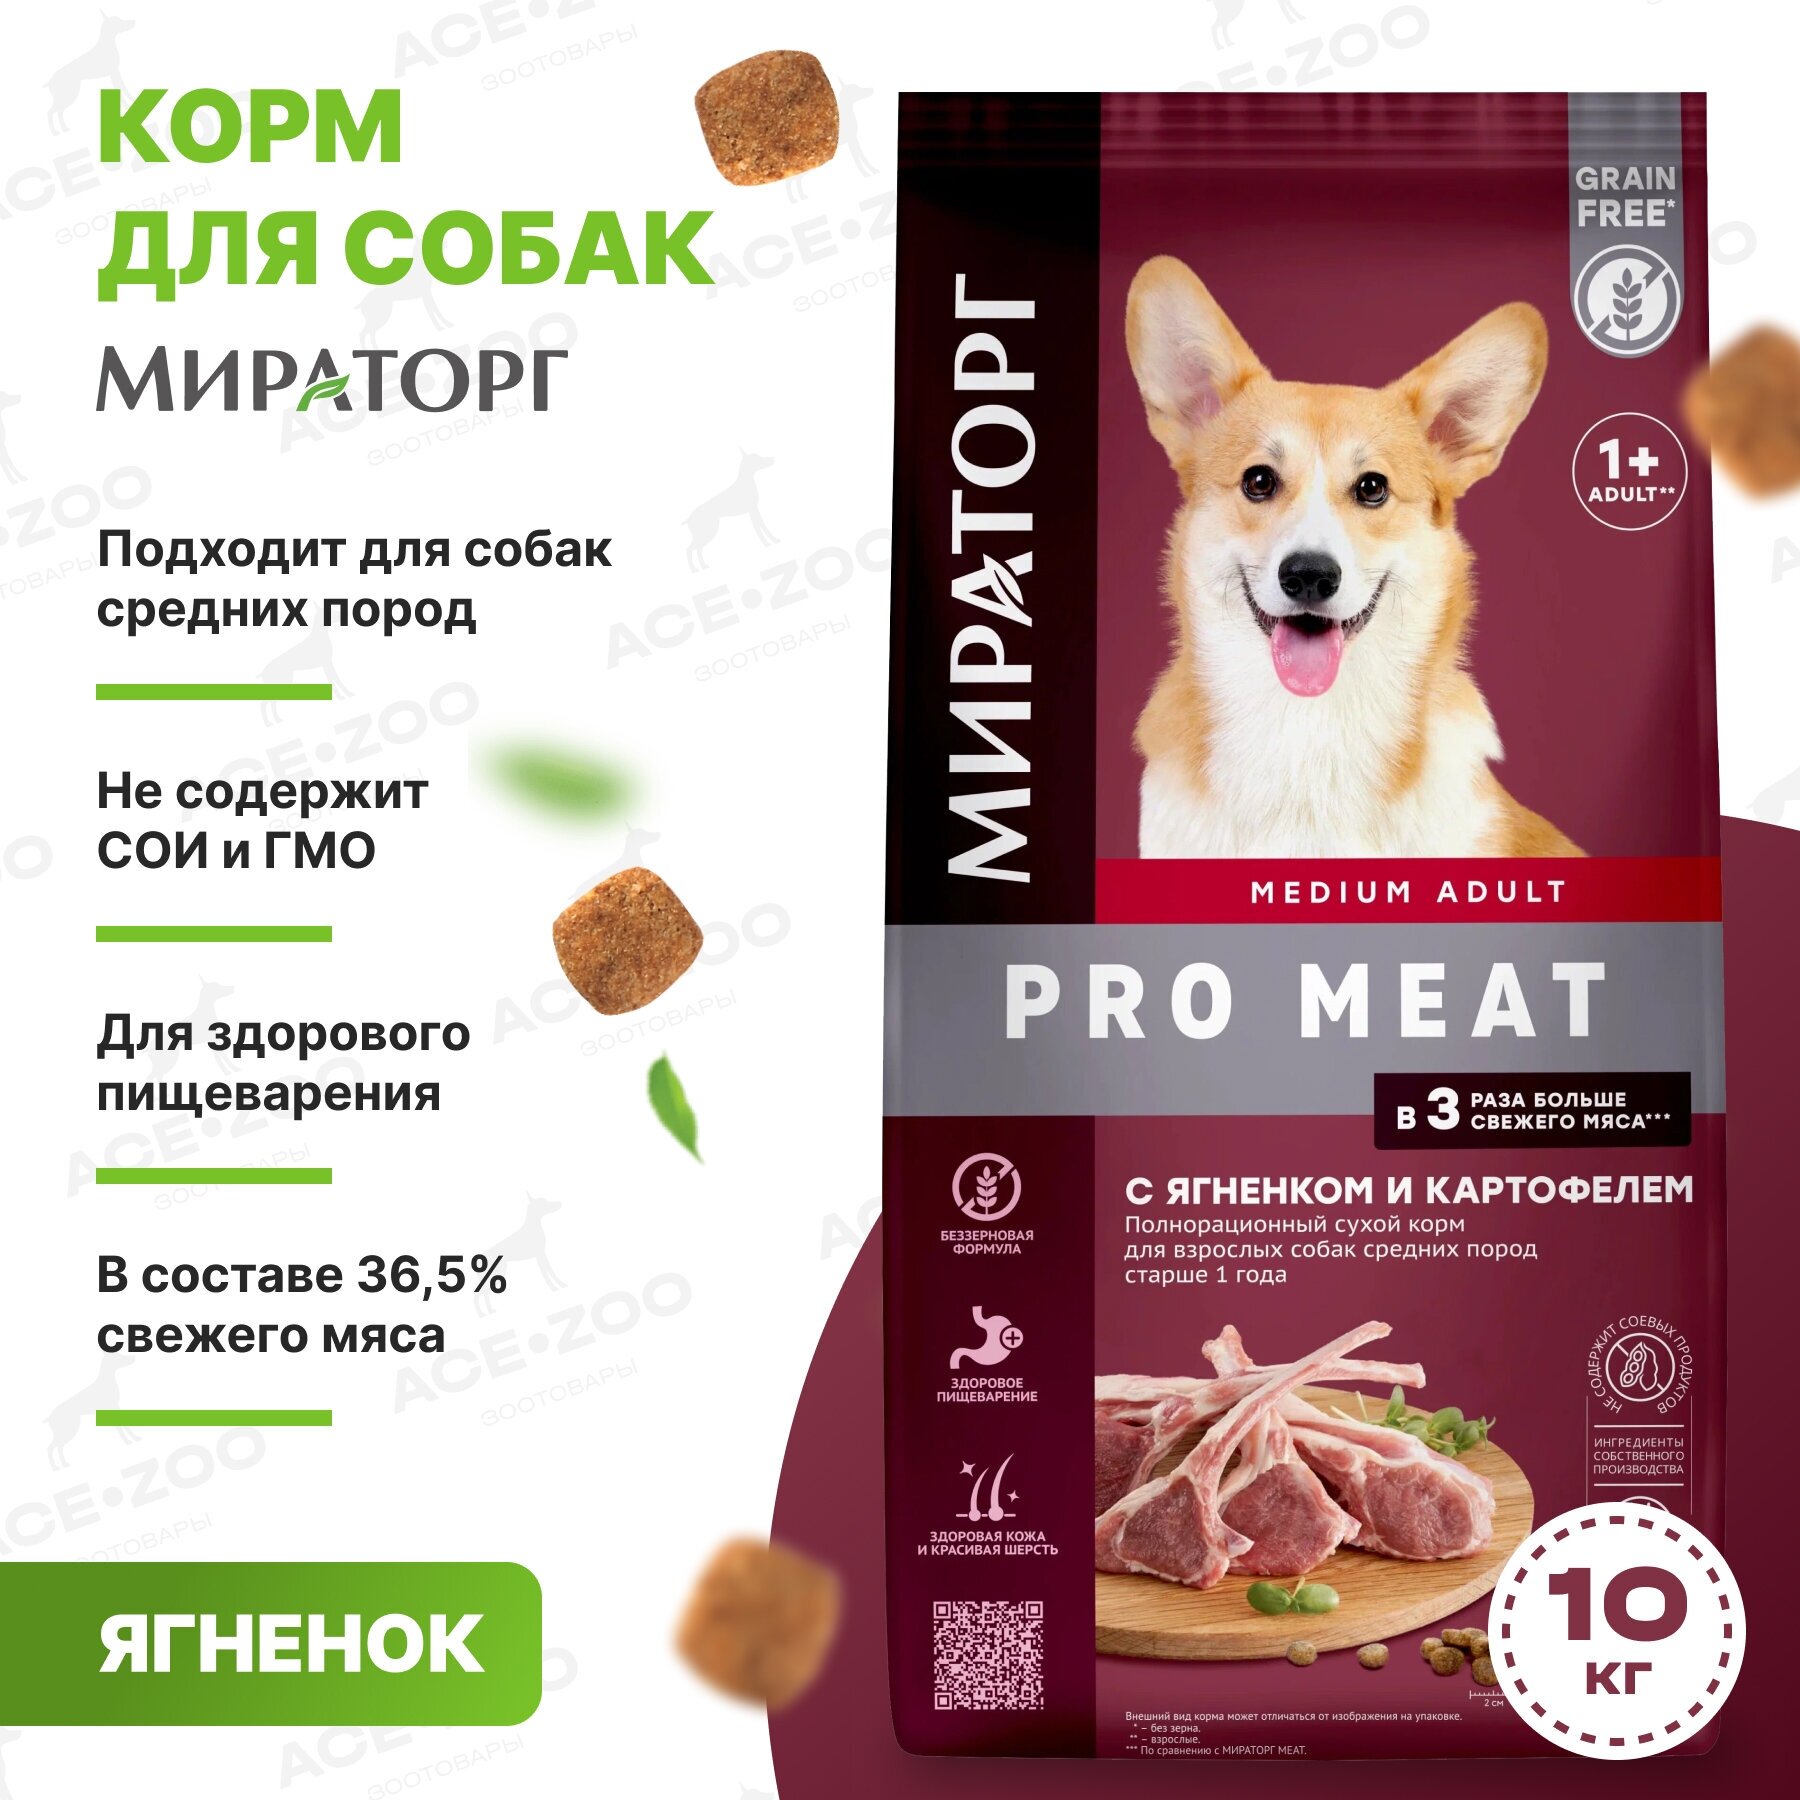 Сухой корм для взрослых собак средних пород Мираторг Pro Meat, с ягненком и картофелем, 10 кг — купить в интернет-магазине по низкой цене на Яндекс Маркете